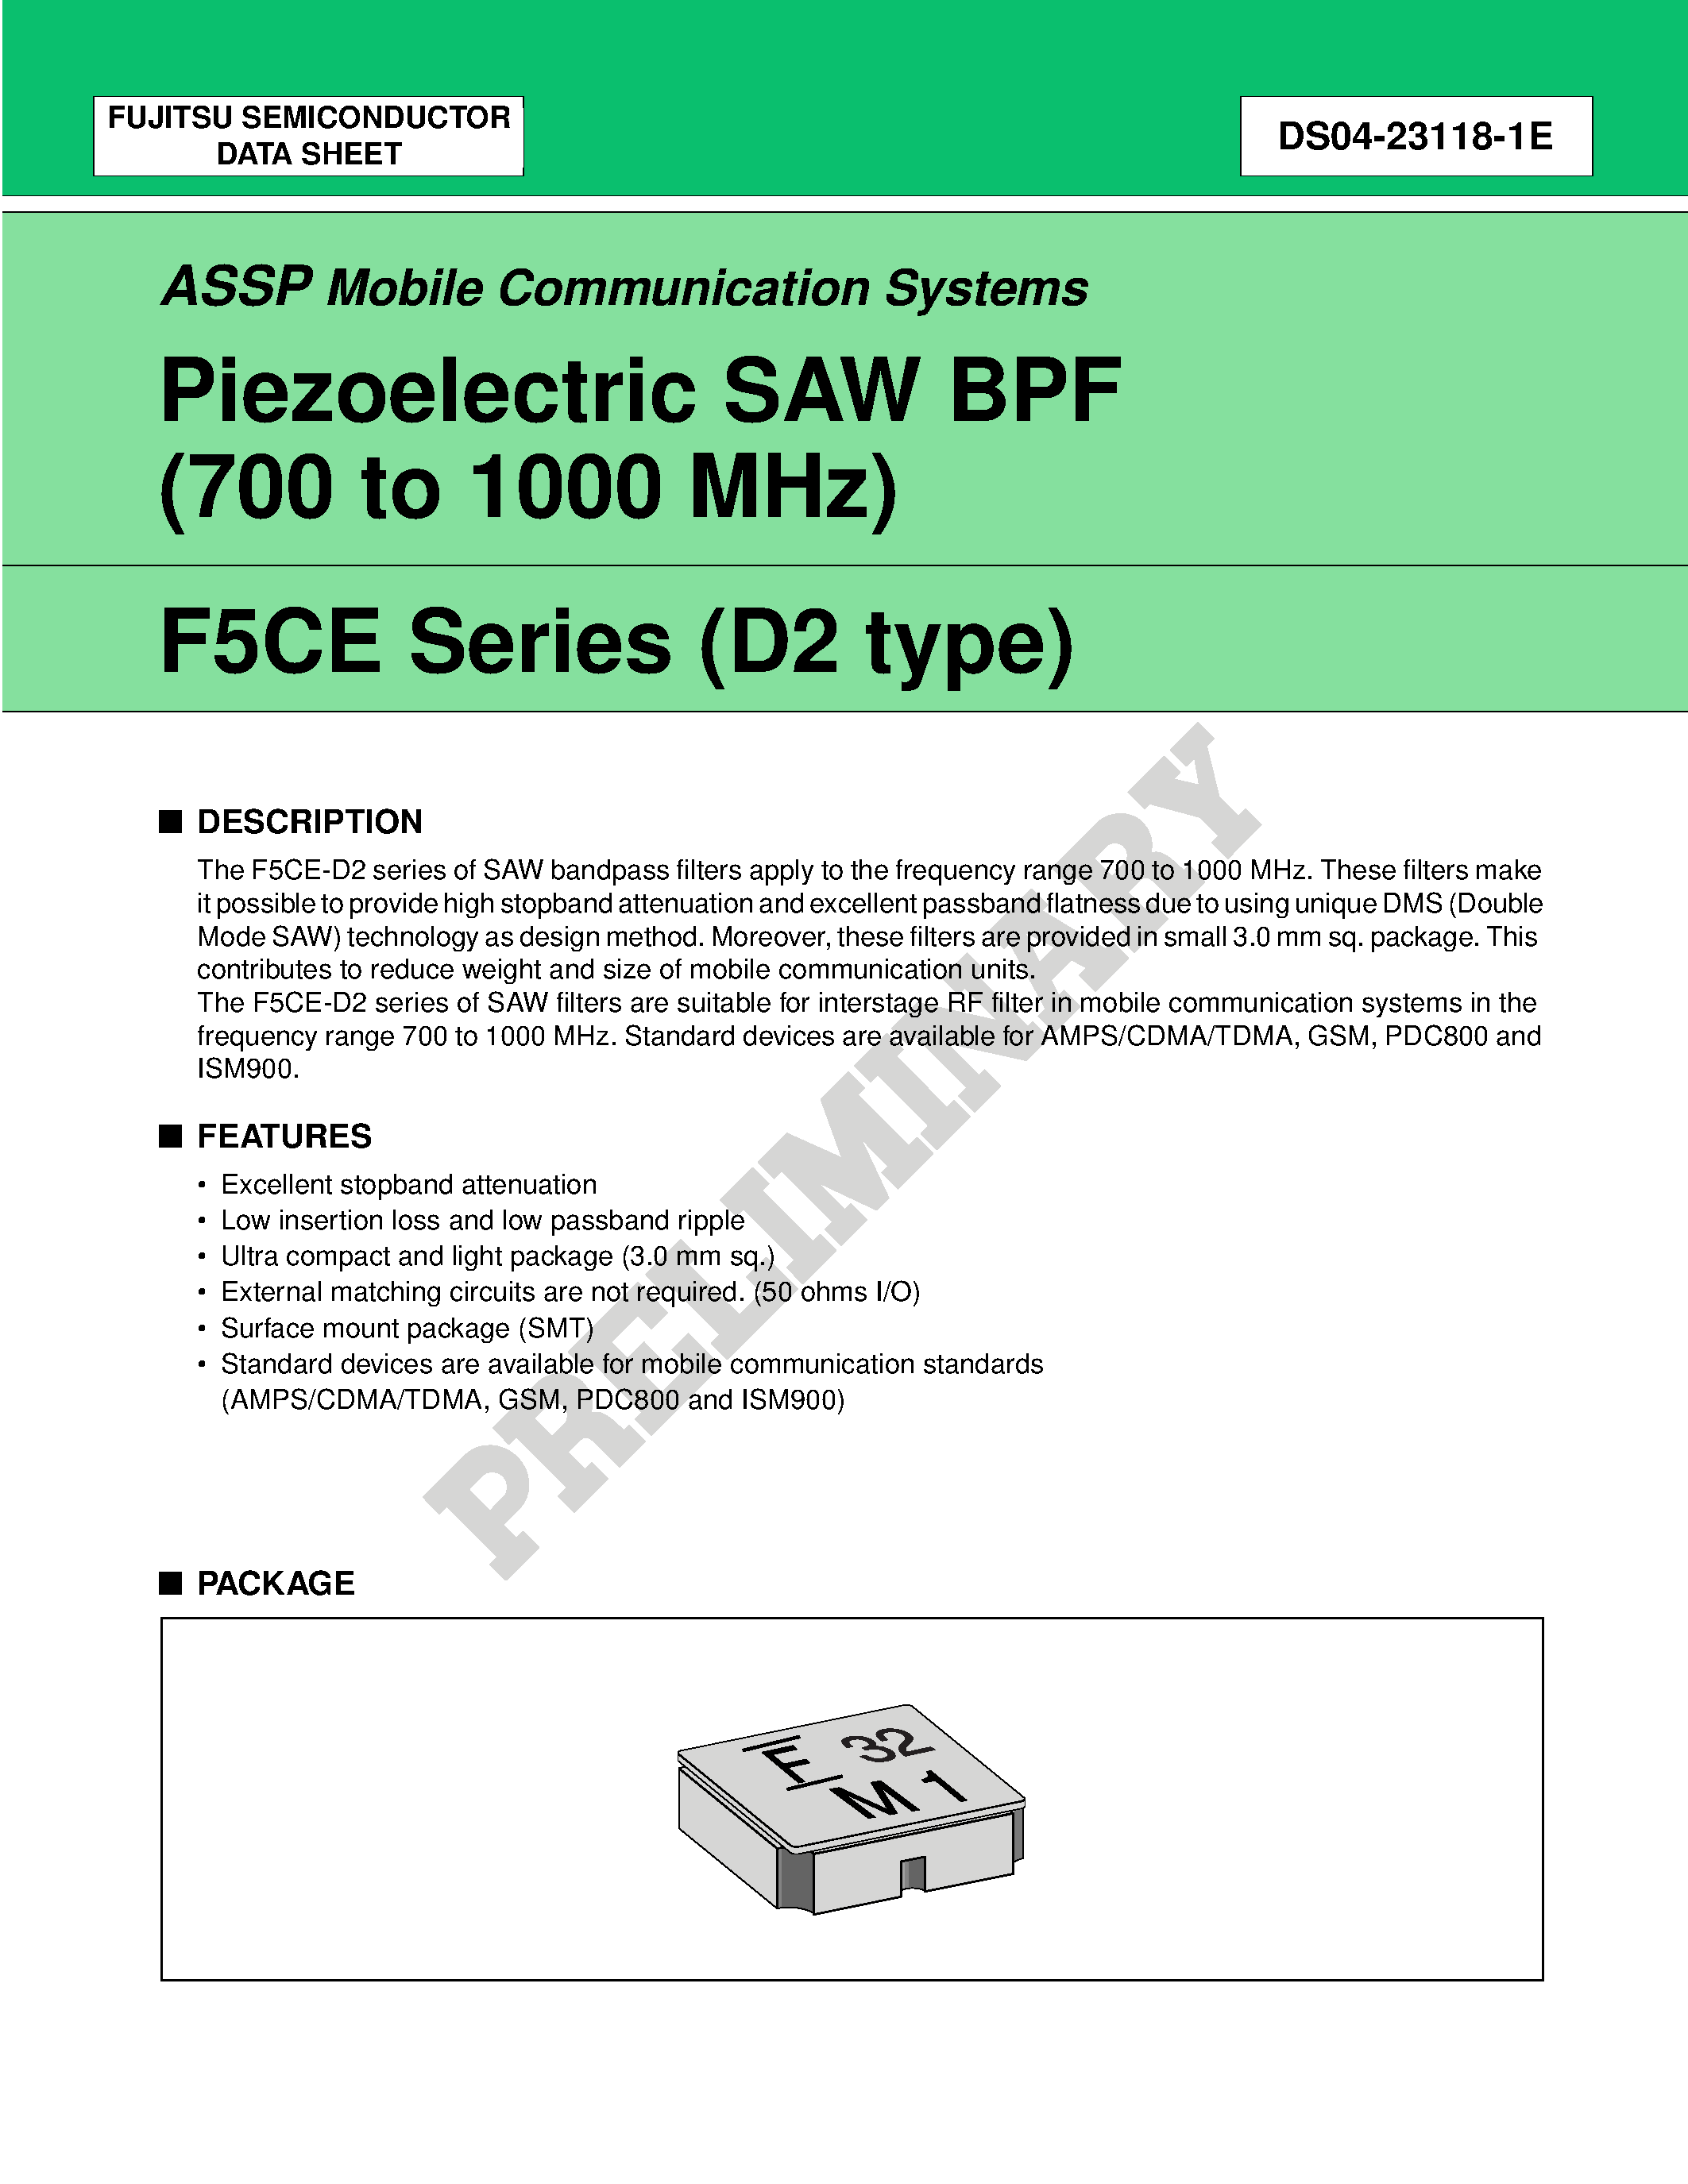 Datasheet FAR-F5CE-906M00-K211-U - Piezoelectric SAW BPF (700 to 1700 MHz) page 1